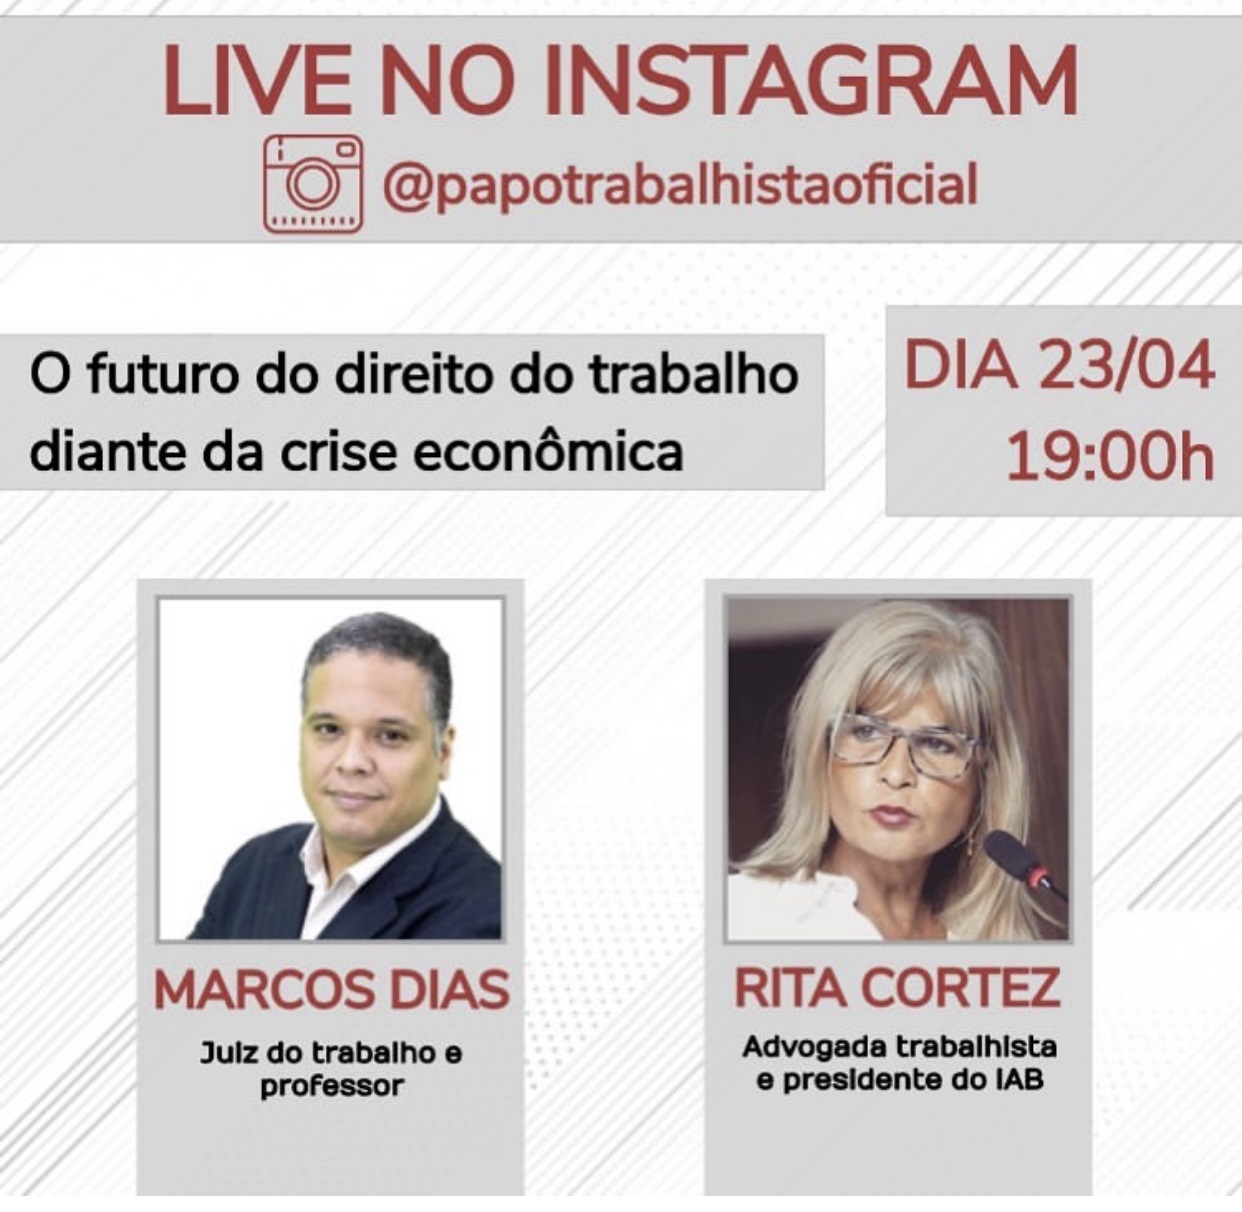 Rita Cortez faz live no Instagram sobre “O futuro do direito do trabalho diante da crise econômica”, nesta quinta (23/4)